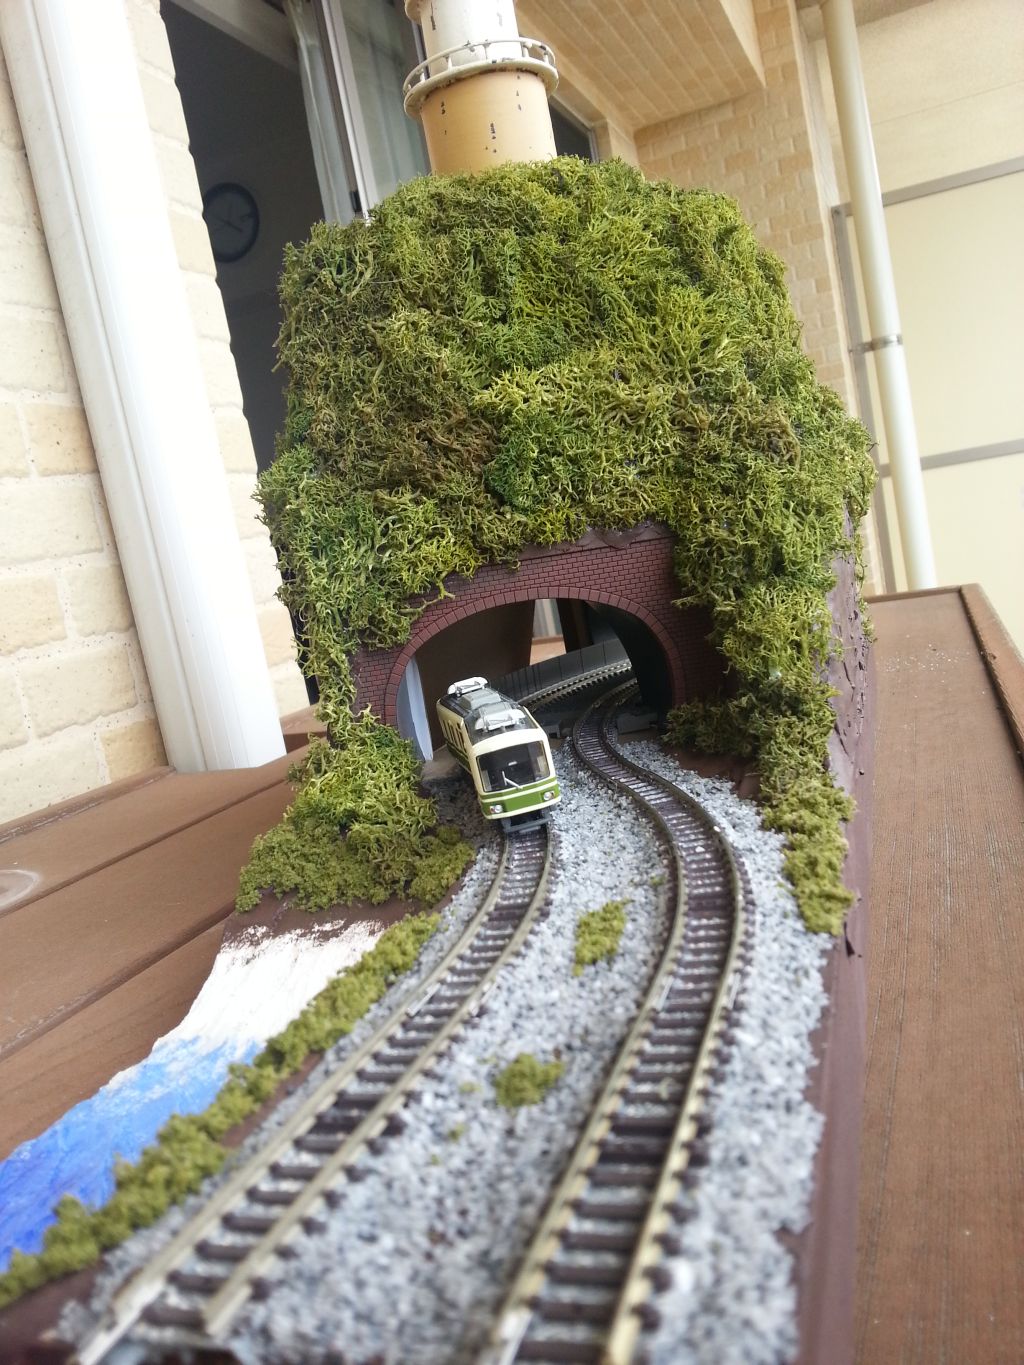 Ｎゲージジオラマ 山のある風景の作成が完成!!: 鉄道模型ブログ てつ 